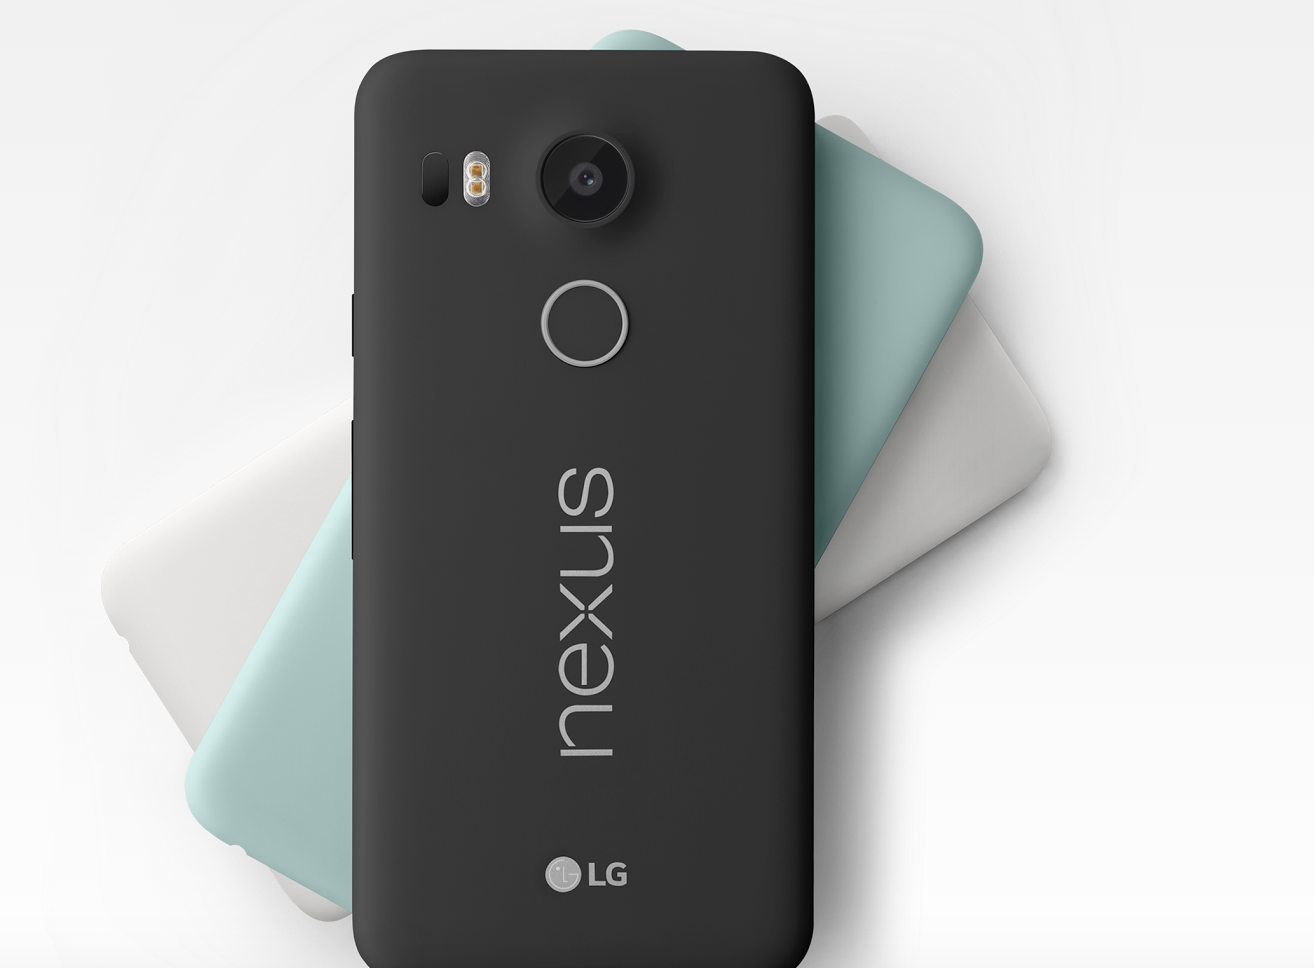 Як і будь-який інший смартфон, Nexus 5X дуже швидко розряджається при перегляді потокового відео, оскільки при цьому задіюється або передавач Wi-Fi, або 3G-модем